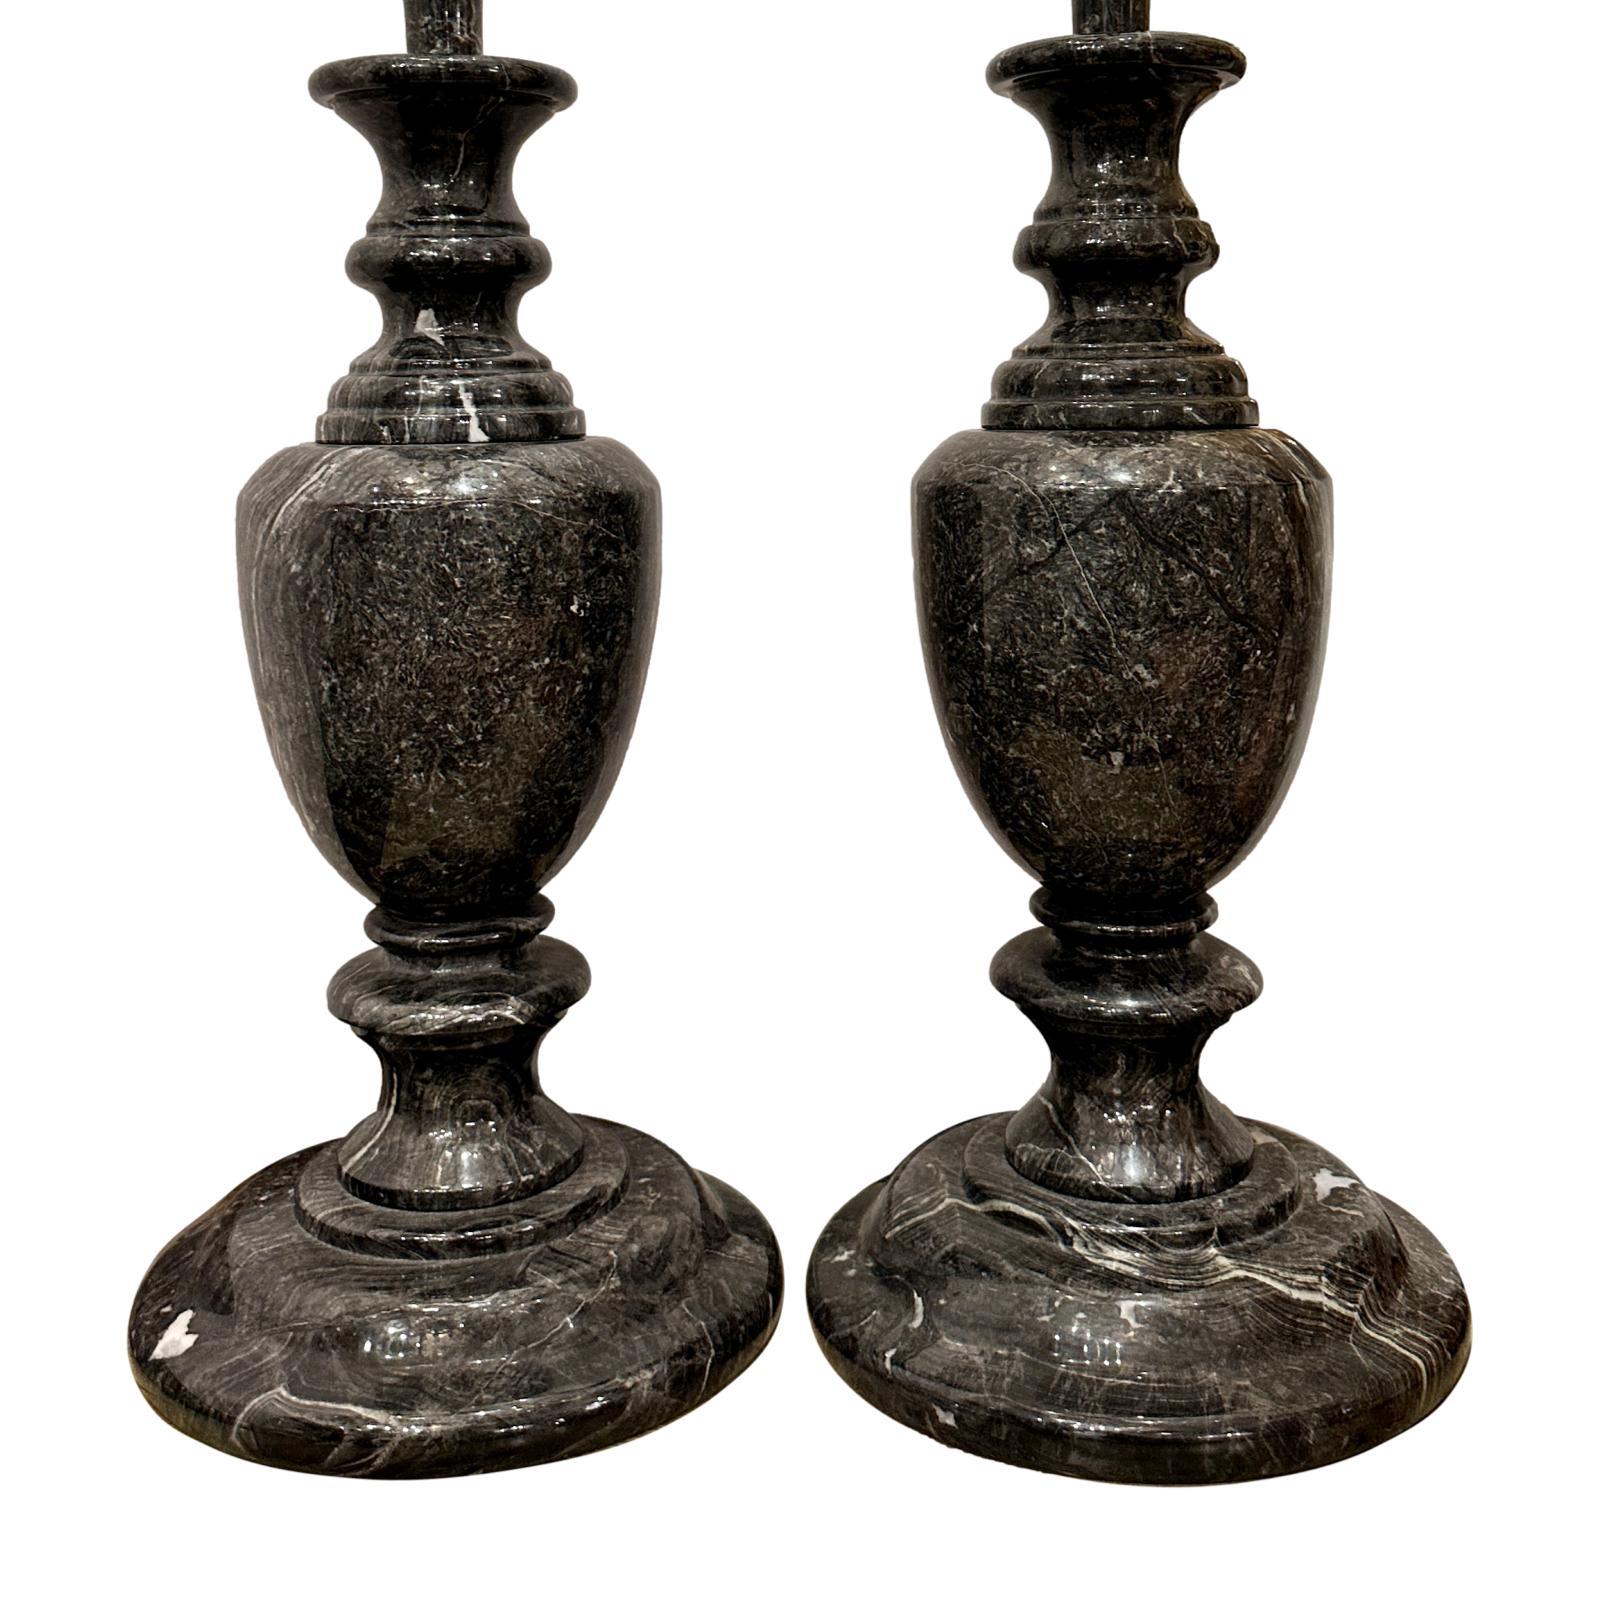 Paire de lampes de table en marbre gris, noir et blanc, de forme balustre, à double faisceau lumineux, datant des années 1920.

Mesures :
Hauteur du corps : 23″.
Hauteur du support de l'abat-jour : 33″.

  